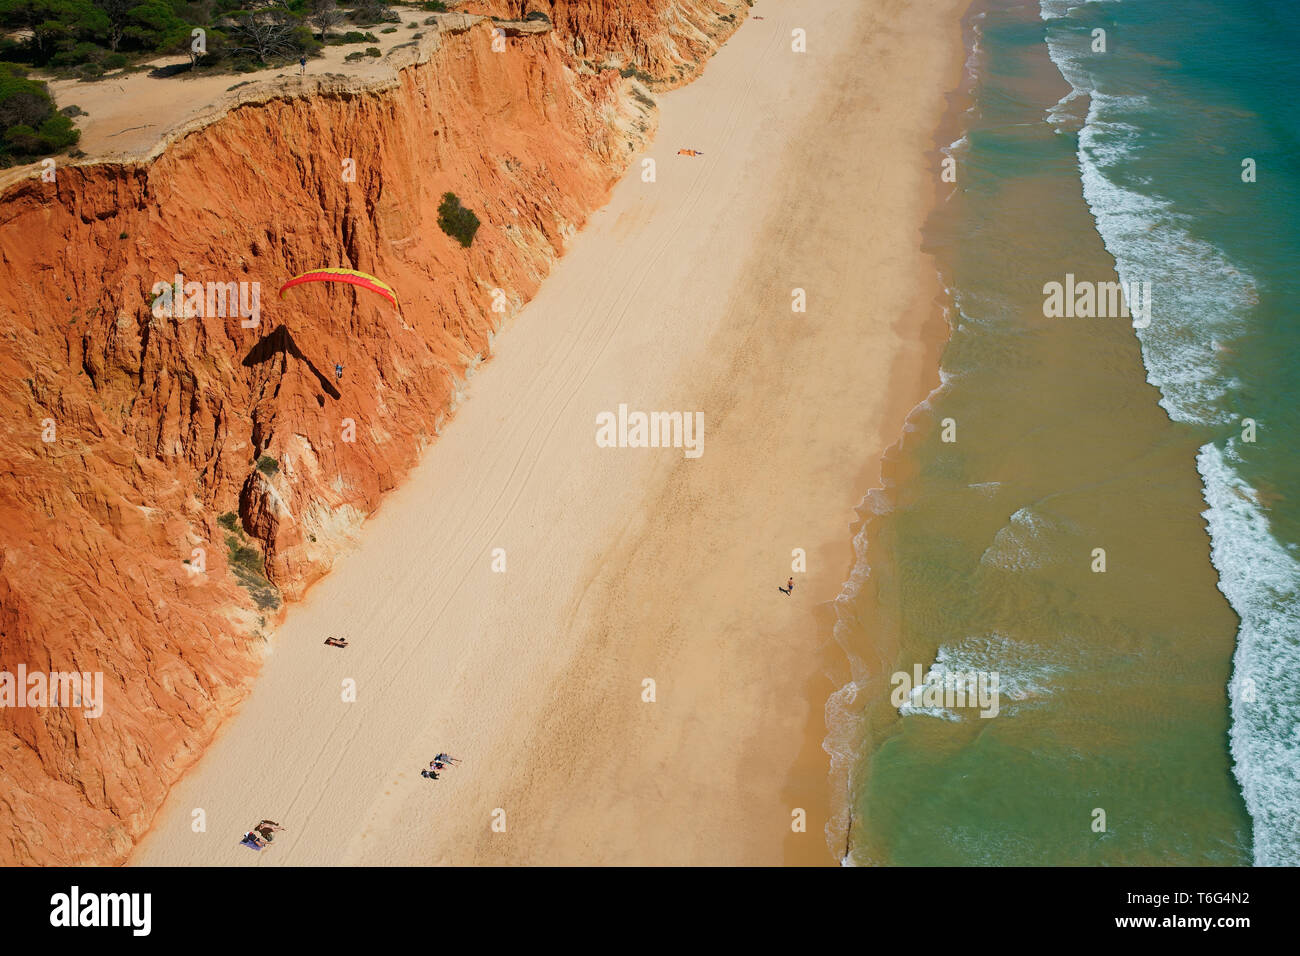 LUFTAUFNAHME. Gleitschirm mit der Meeresbrise, um entlang einer bunten Klippe am Meer zu schweben. Praia da Falésia, Albufeira, Algarve, Portugal. Stockfoto